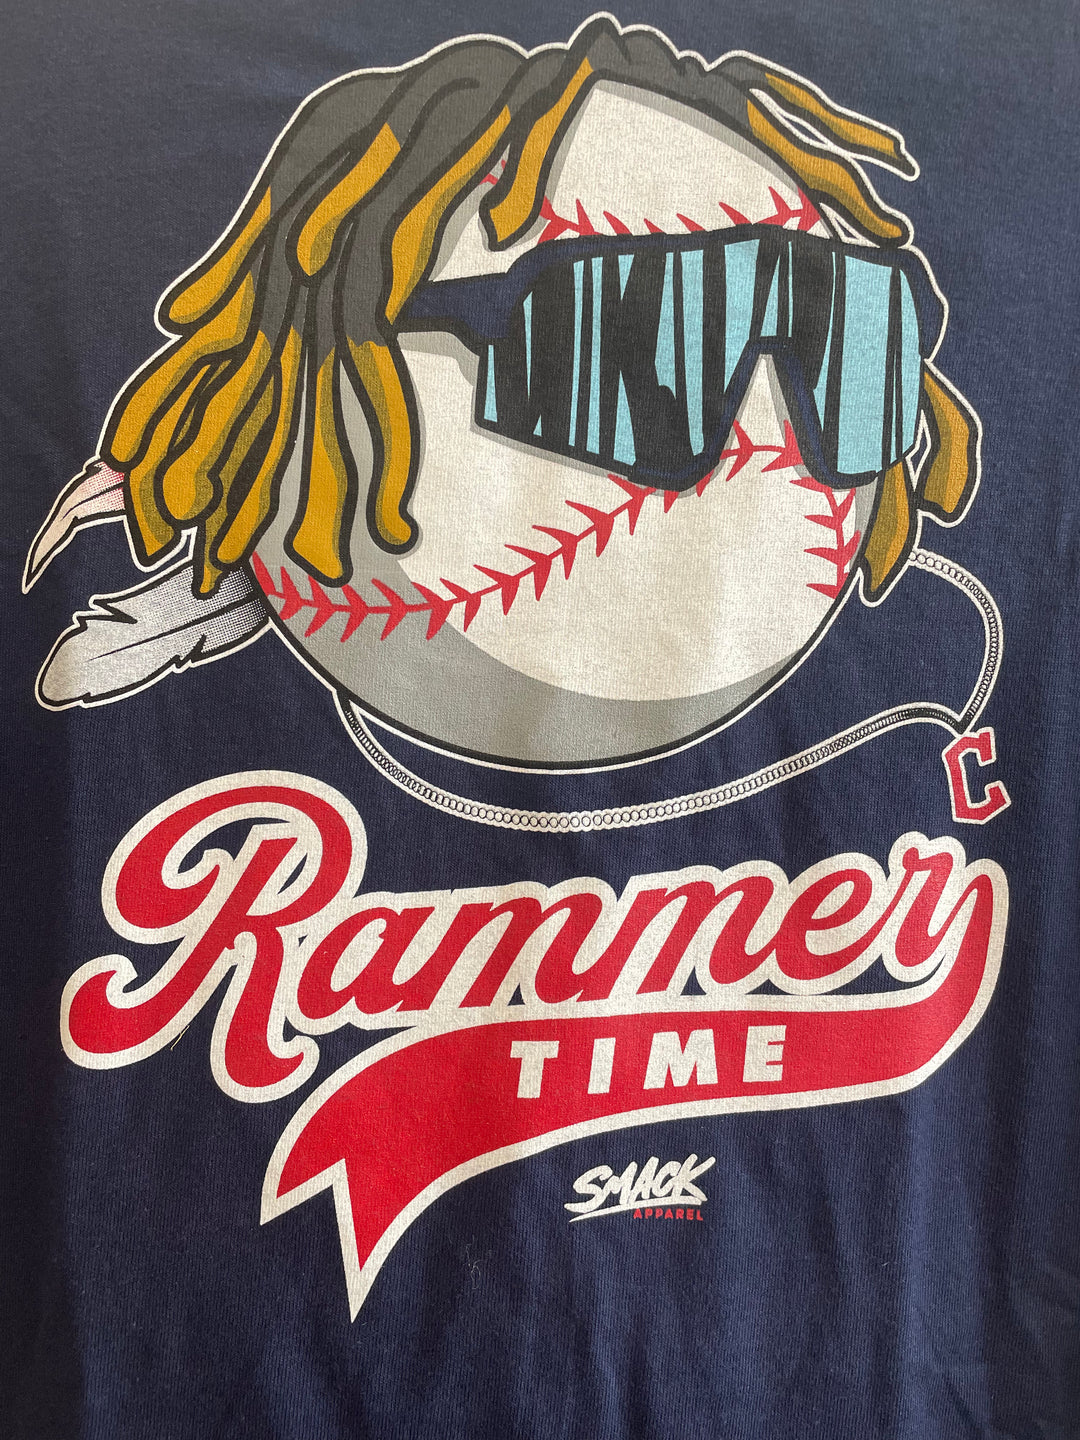 Rammer Time T-Shirt